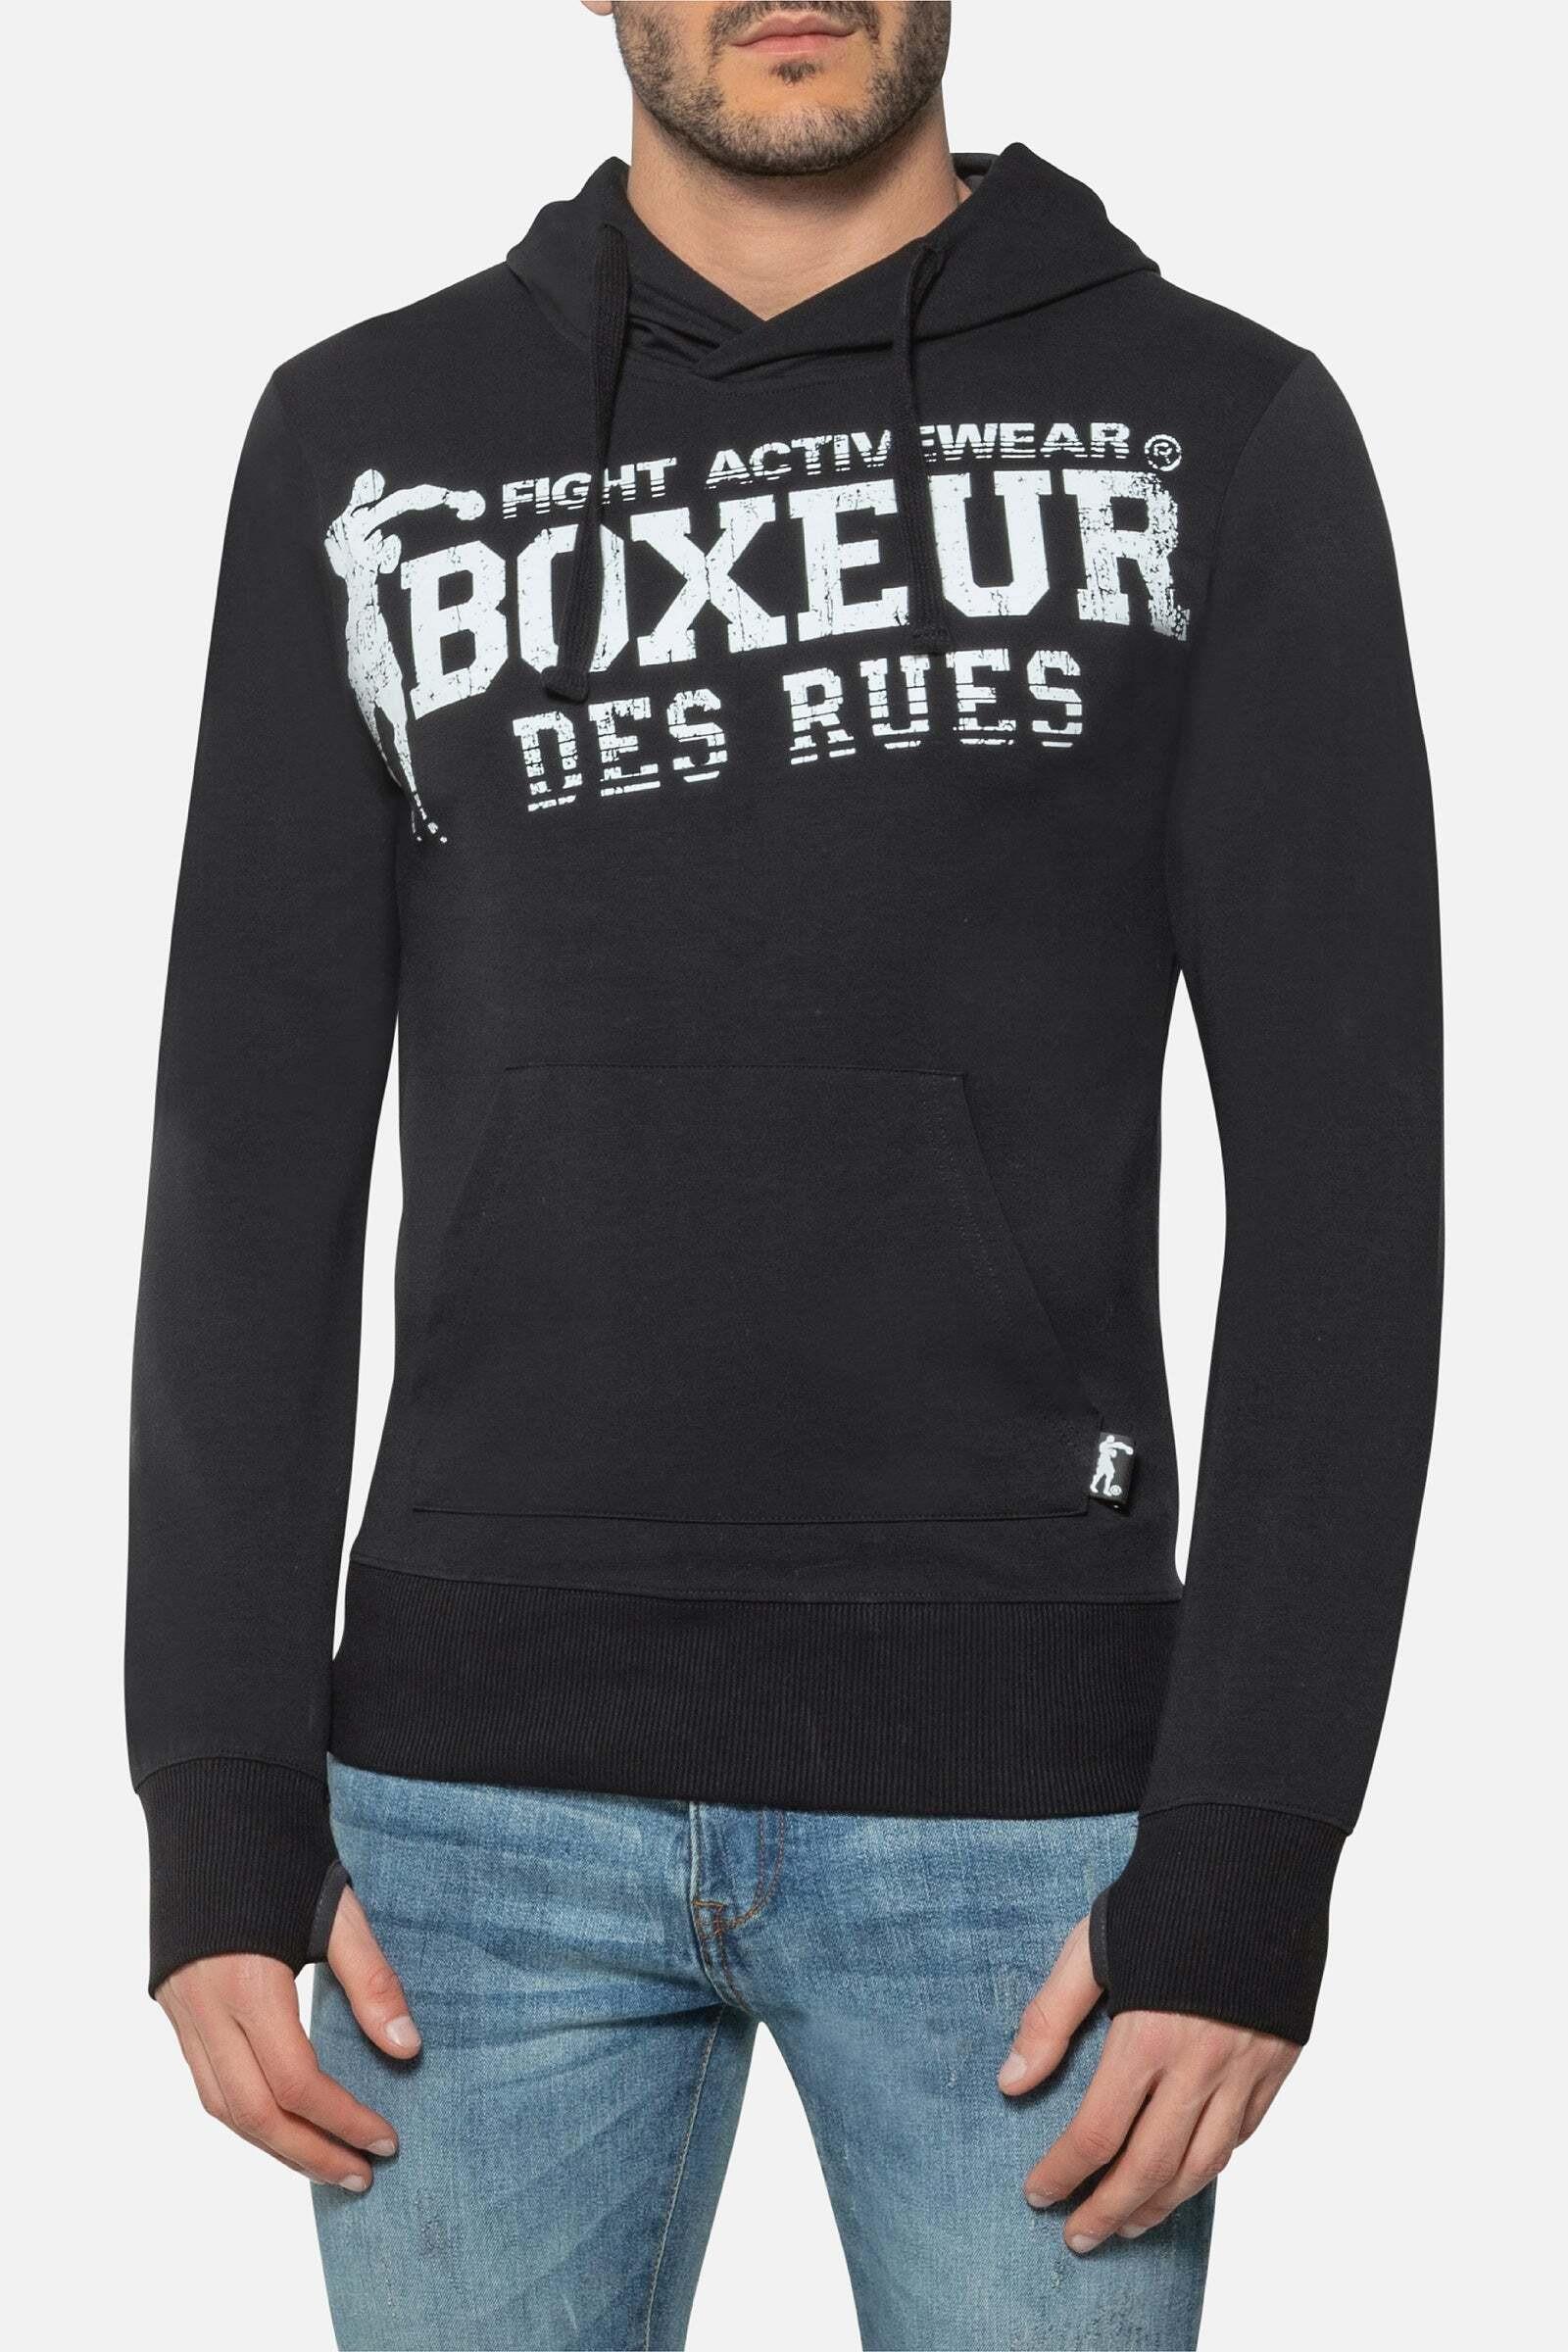 Kapuzenpullover Hooded Sweatshirt With Thumb Openings Herren Schwarz S von BOXEUR DES RUES